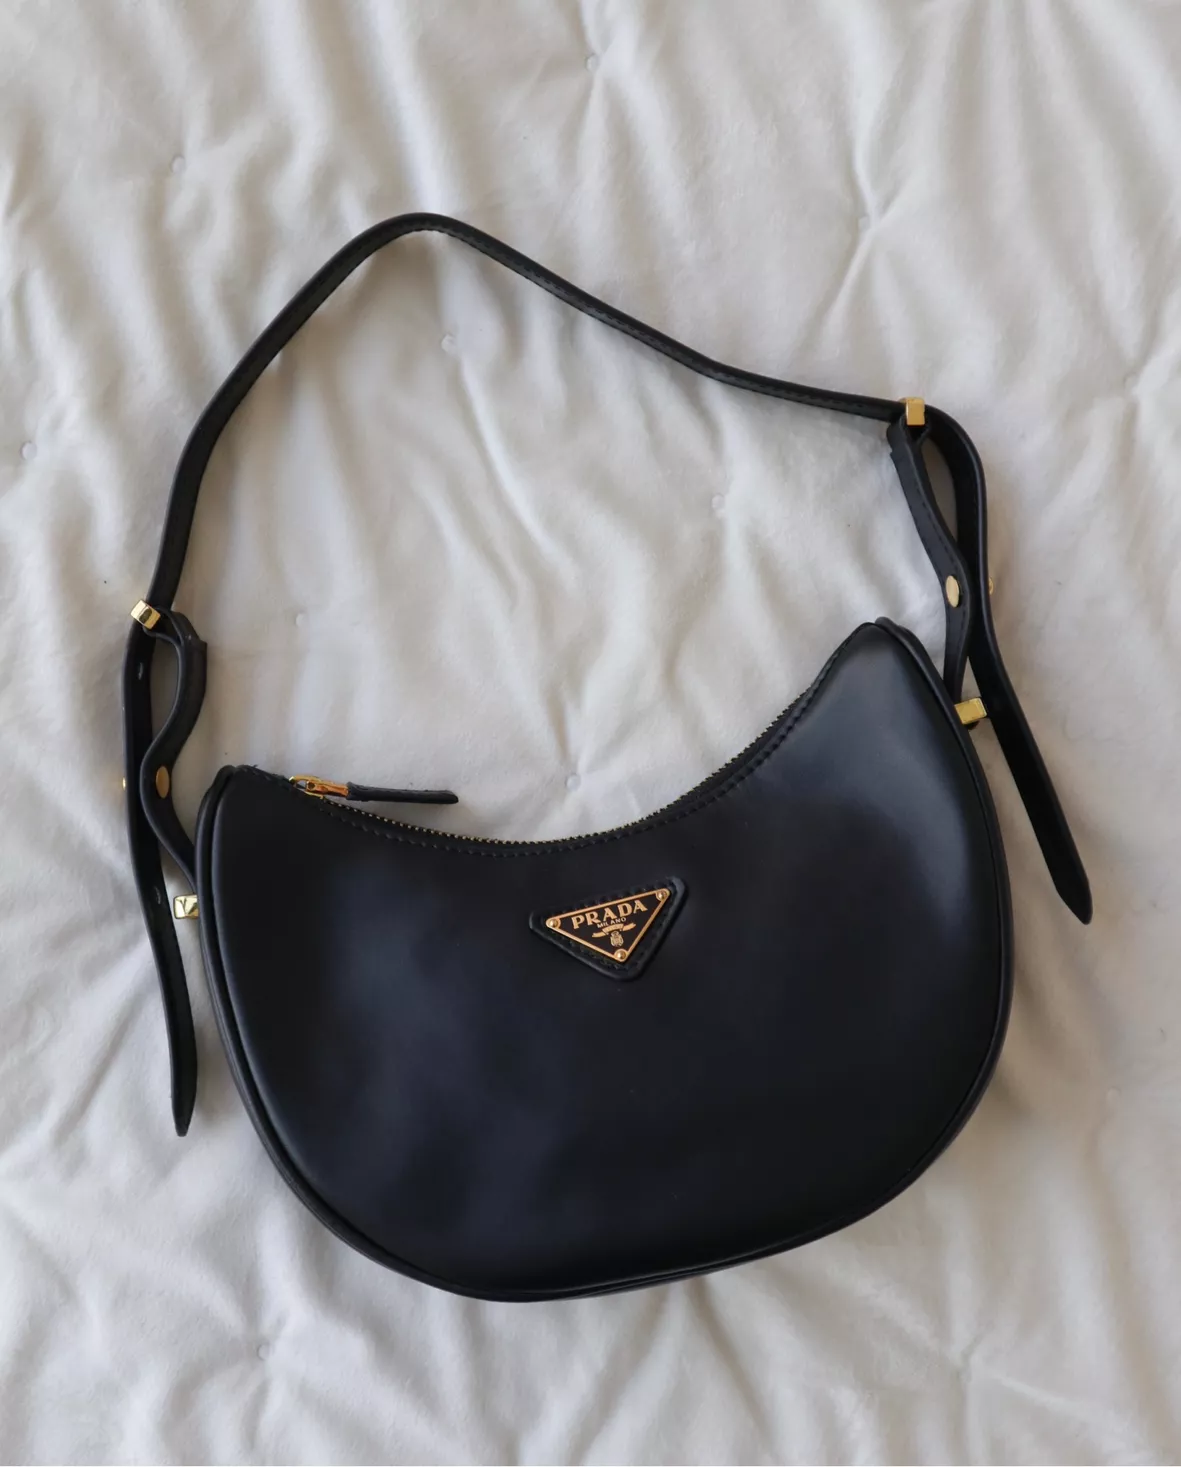 Marelle Handbag Epi Leather curated on LTK